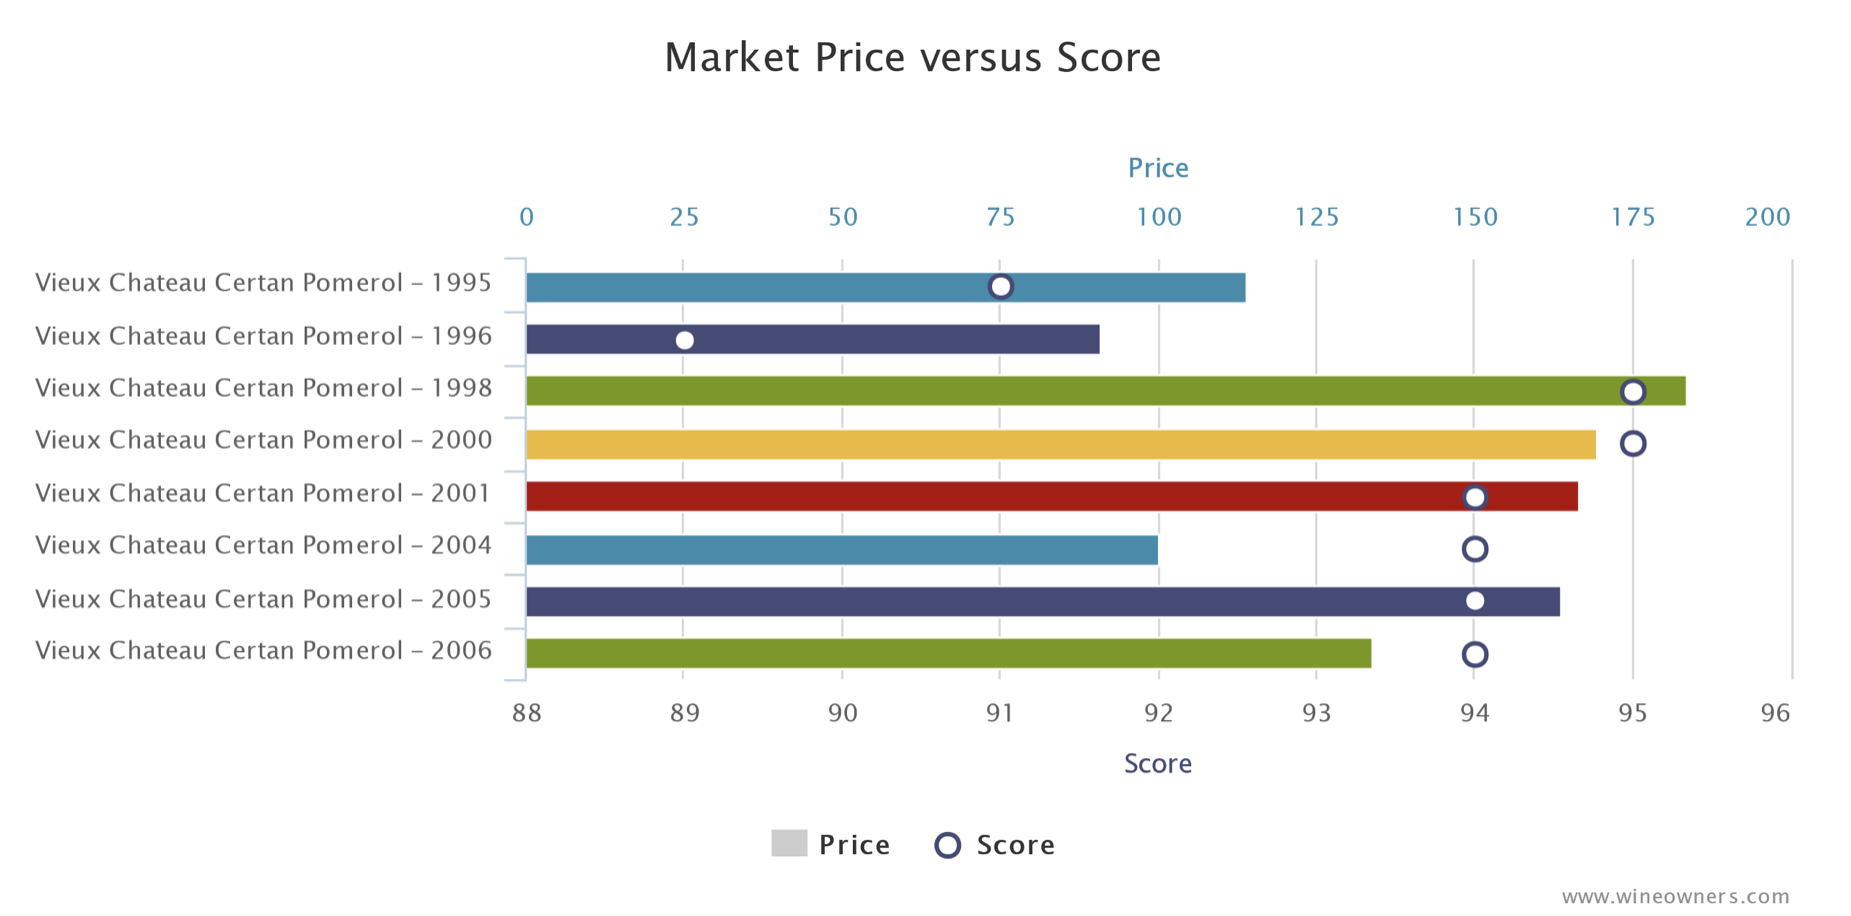 Vieux Chateau Certan - Market Price versus Score - Wine Owners